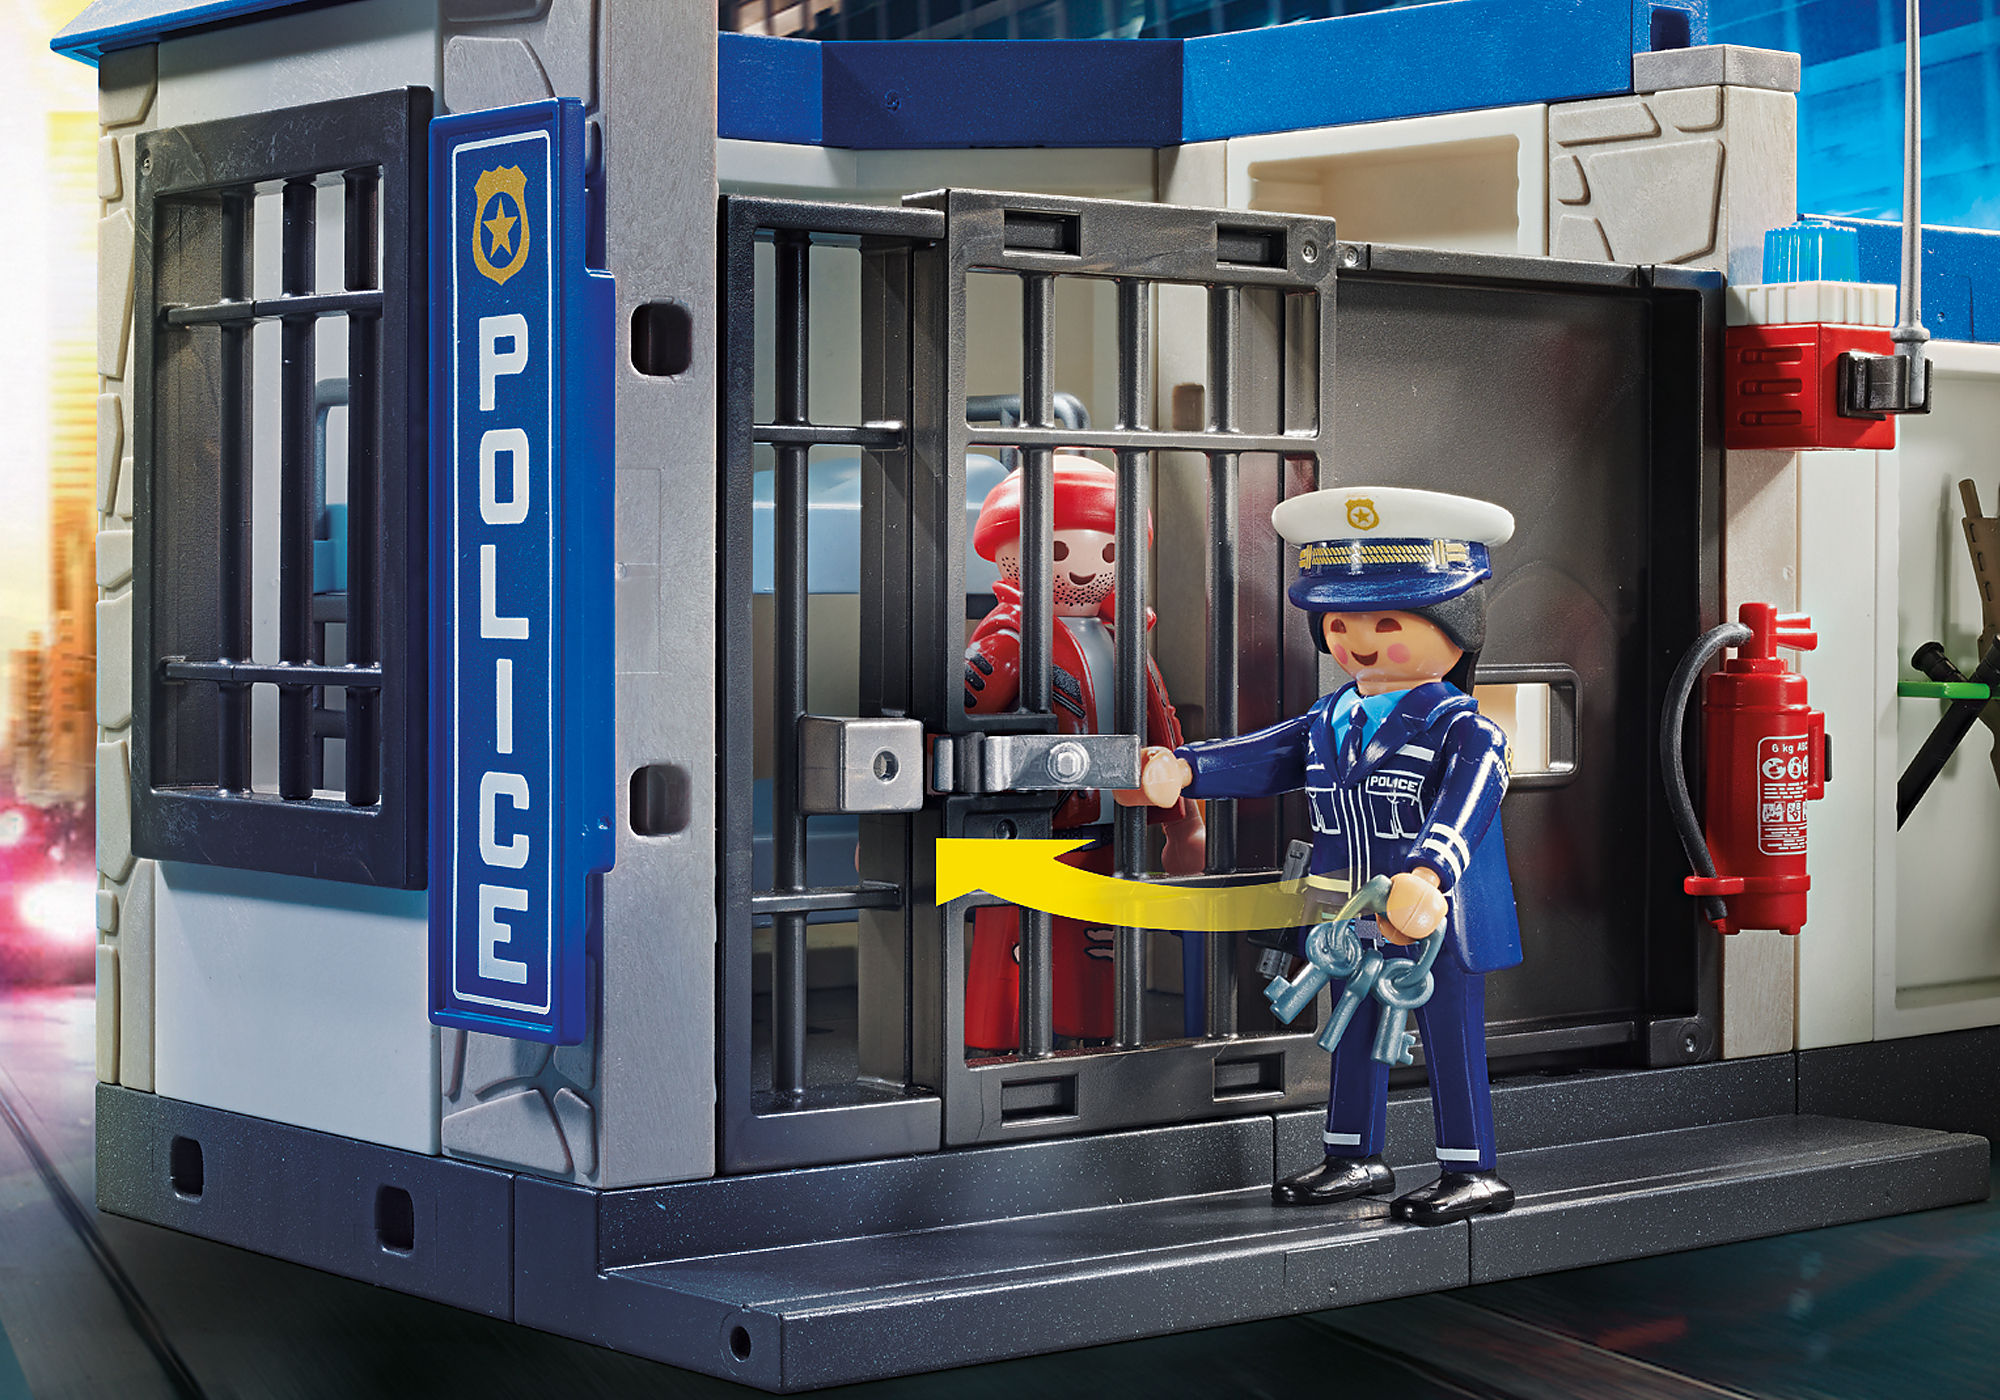 Playmobil City Action Polícia a Fugir da Prisão - 70568